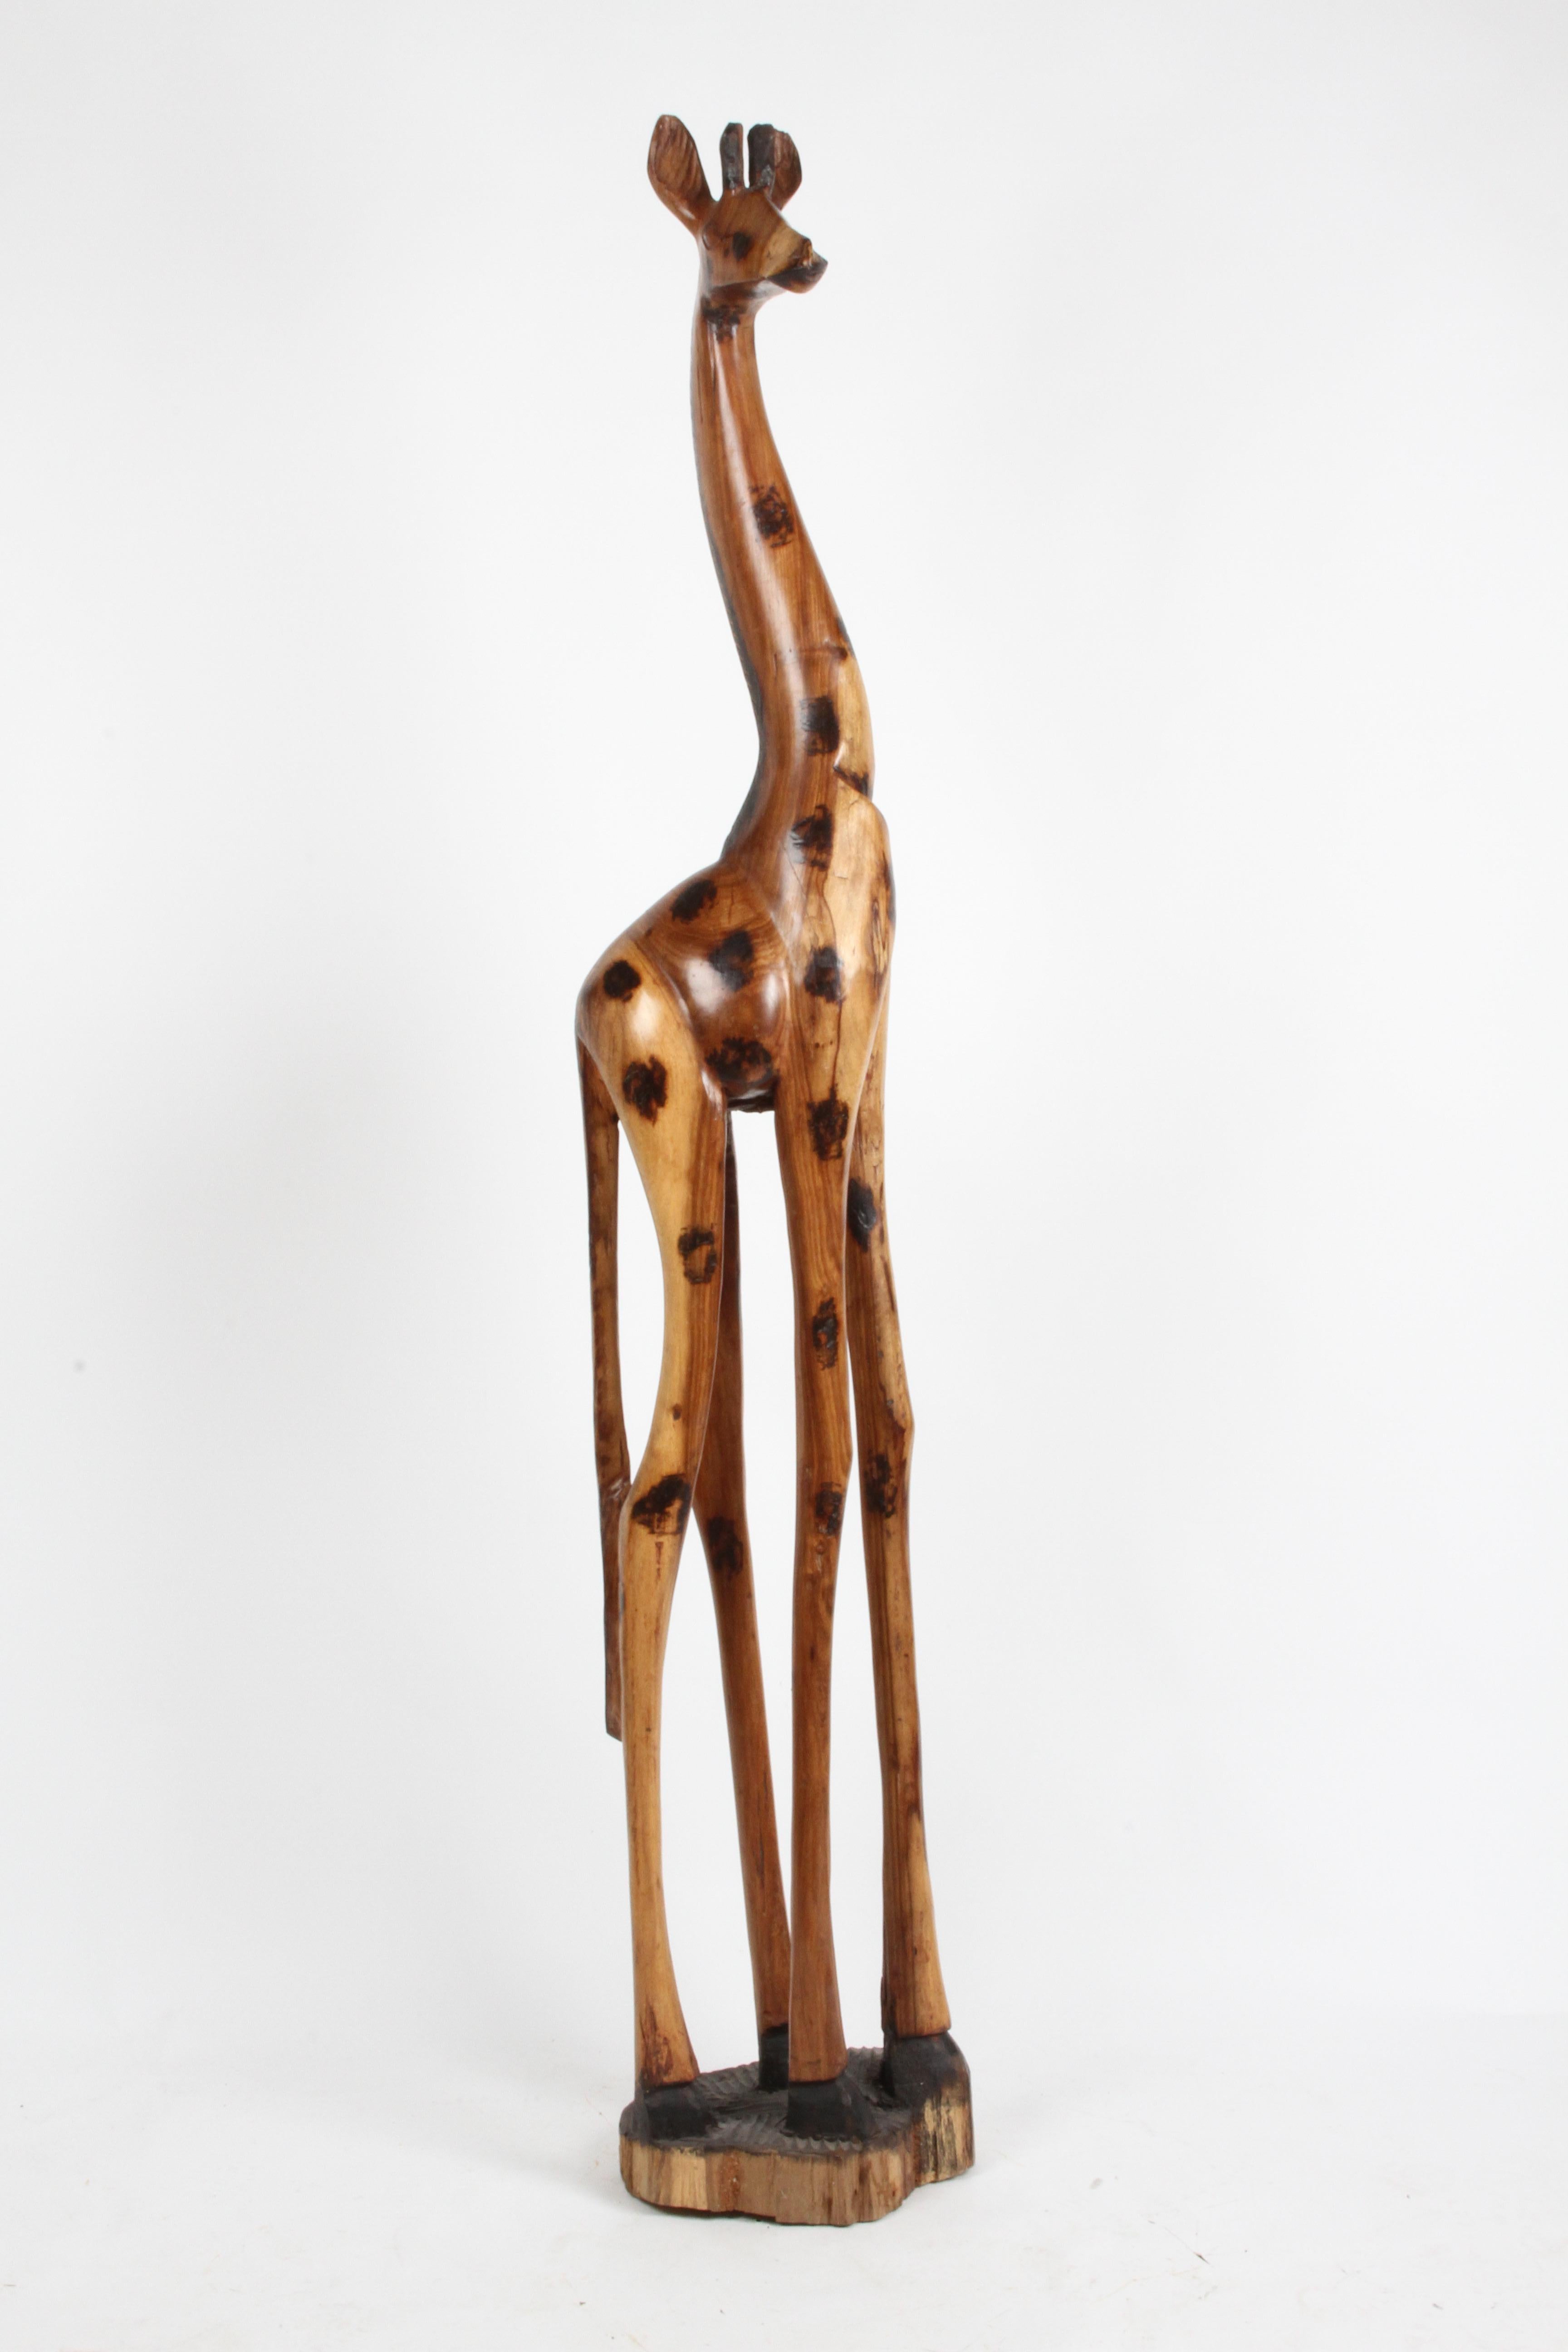 Große, handgeschnitzte Giraffe aus afrikanischer Volkskunst, mit verkohlten, schwarz gebeizten Flecken. Scheint aus Holz geschnitzt zu sein. In gutem Vintage-Zustand. Nicht signiert. Maße: 80